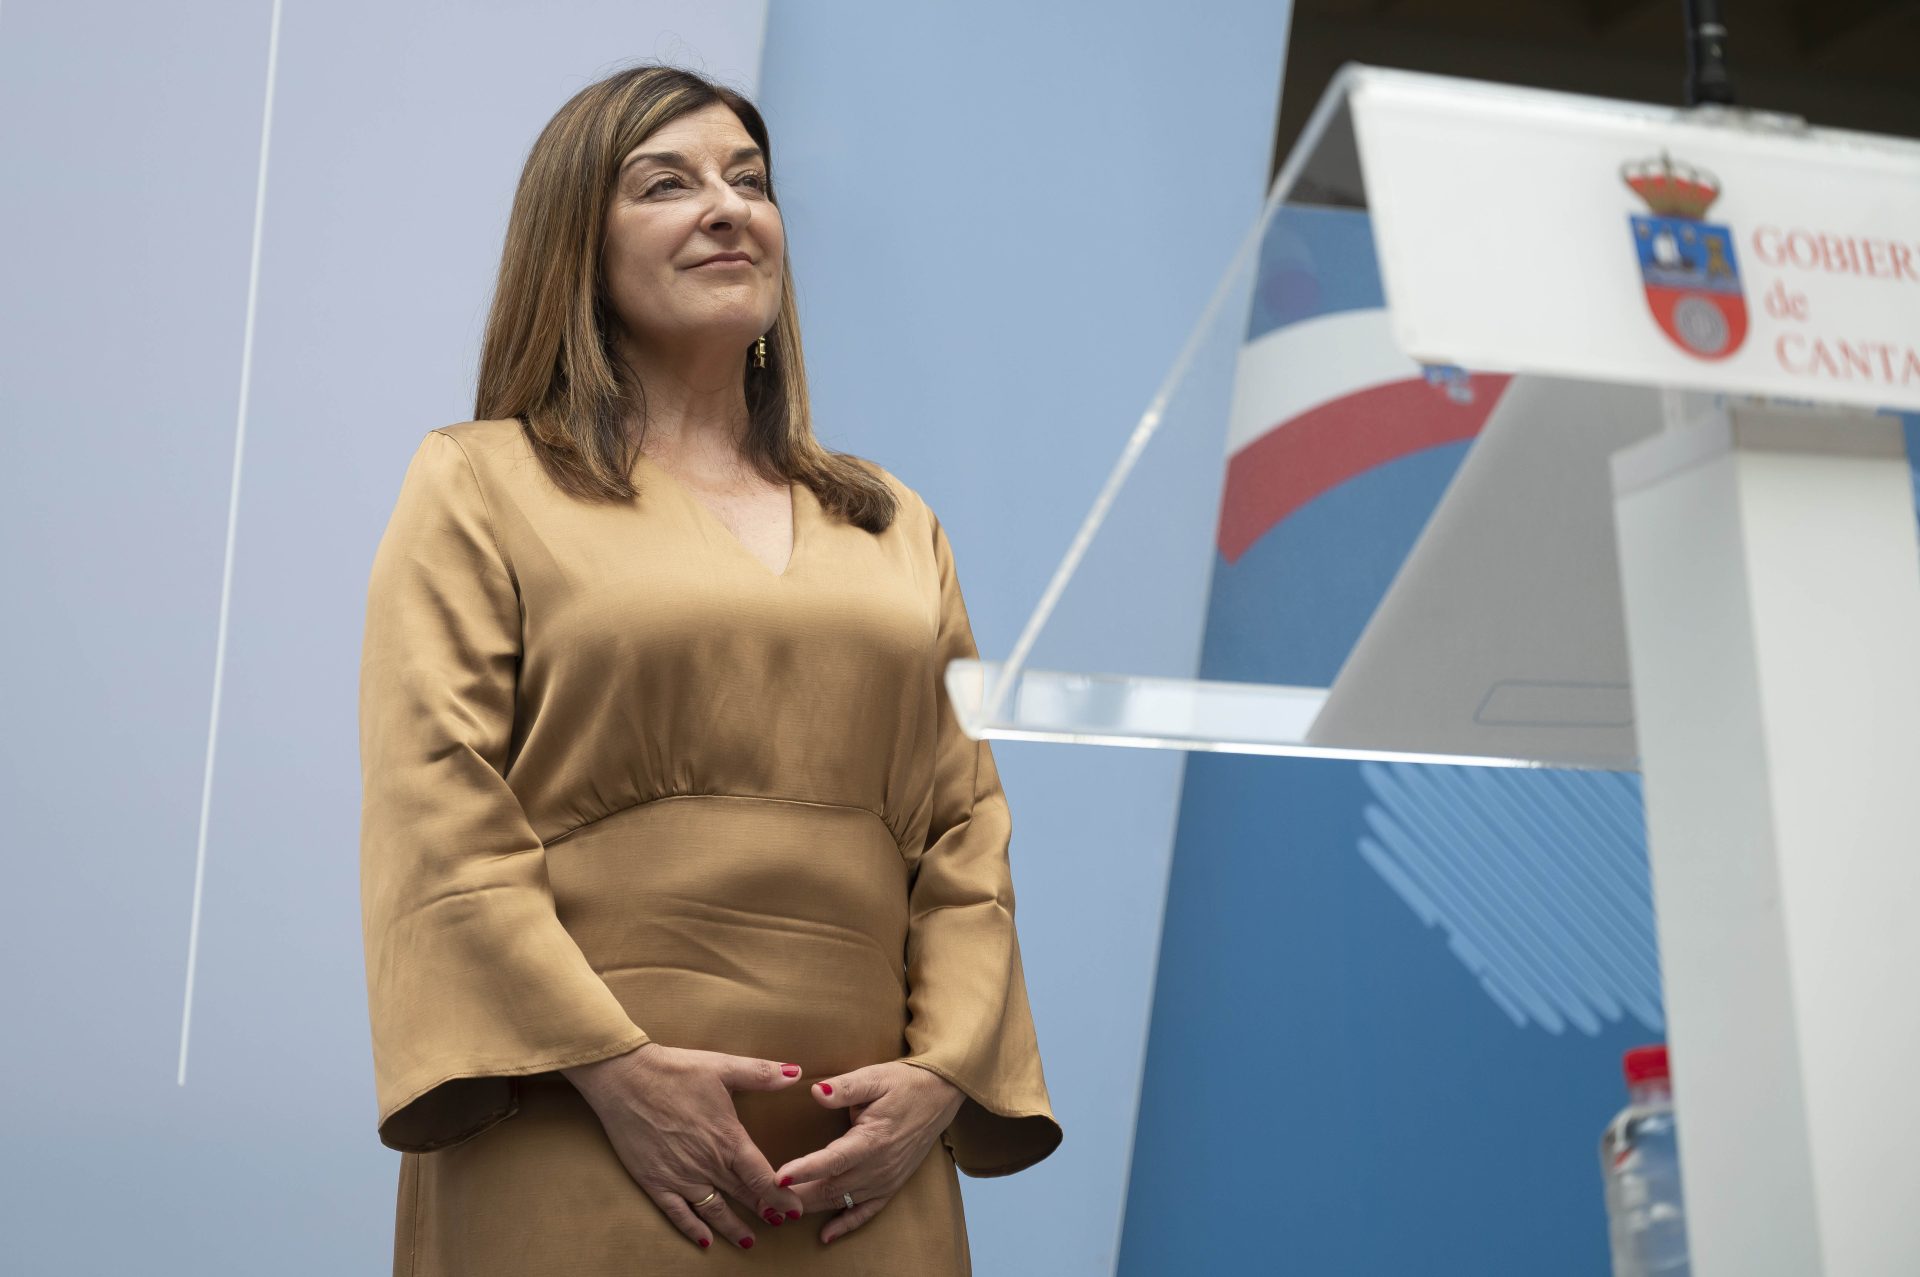 La presidenta de Cantabria, María José Sáenz de Buruaga. EFE/Pedro Puente Hoyos